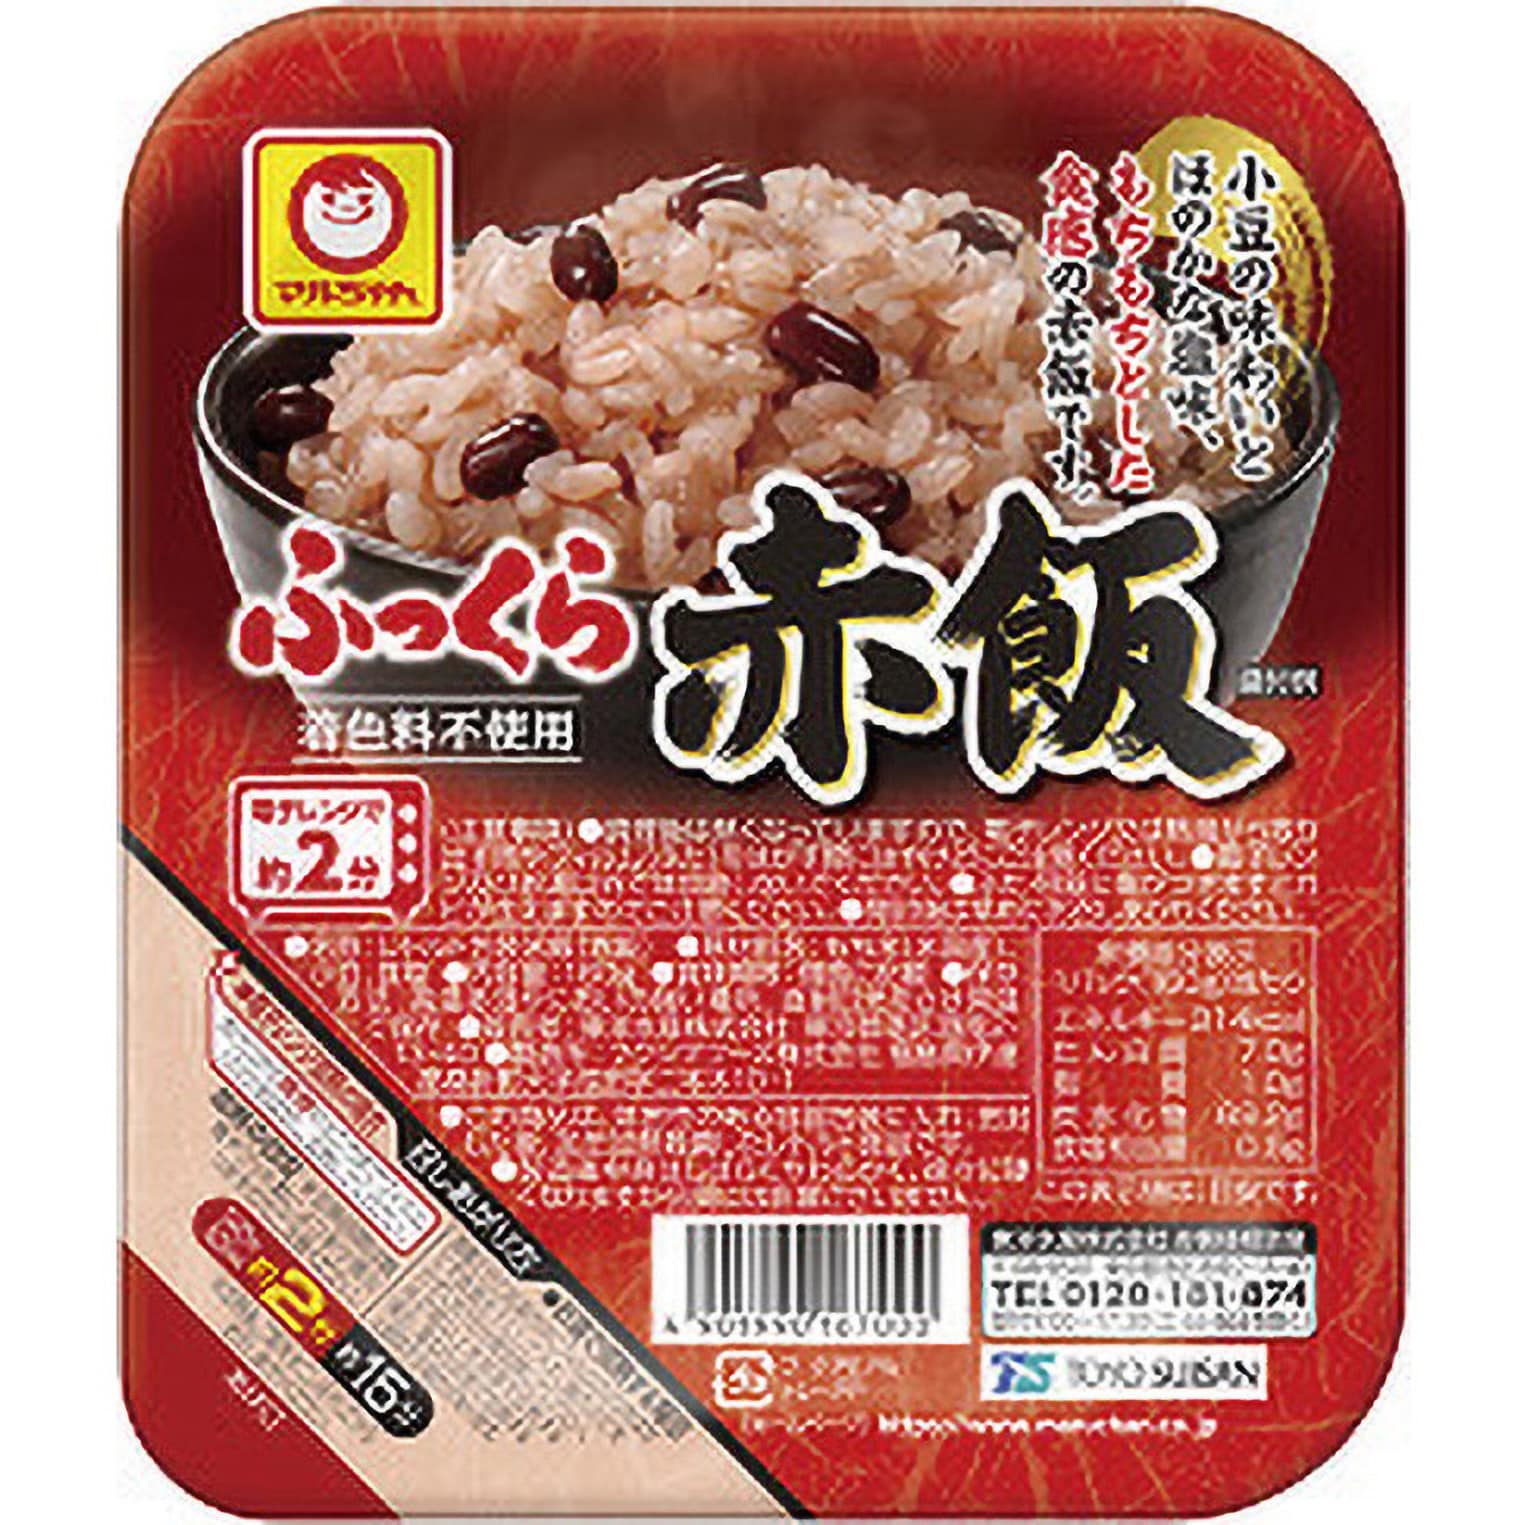 引出物 パックごはん 3食 マルちゃん ふっくら赤飯160g 3食入 × 1個 東洋水産 米加工品 包装米飯